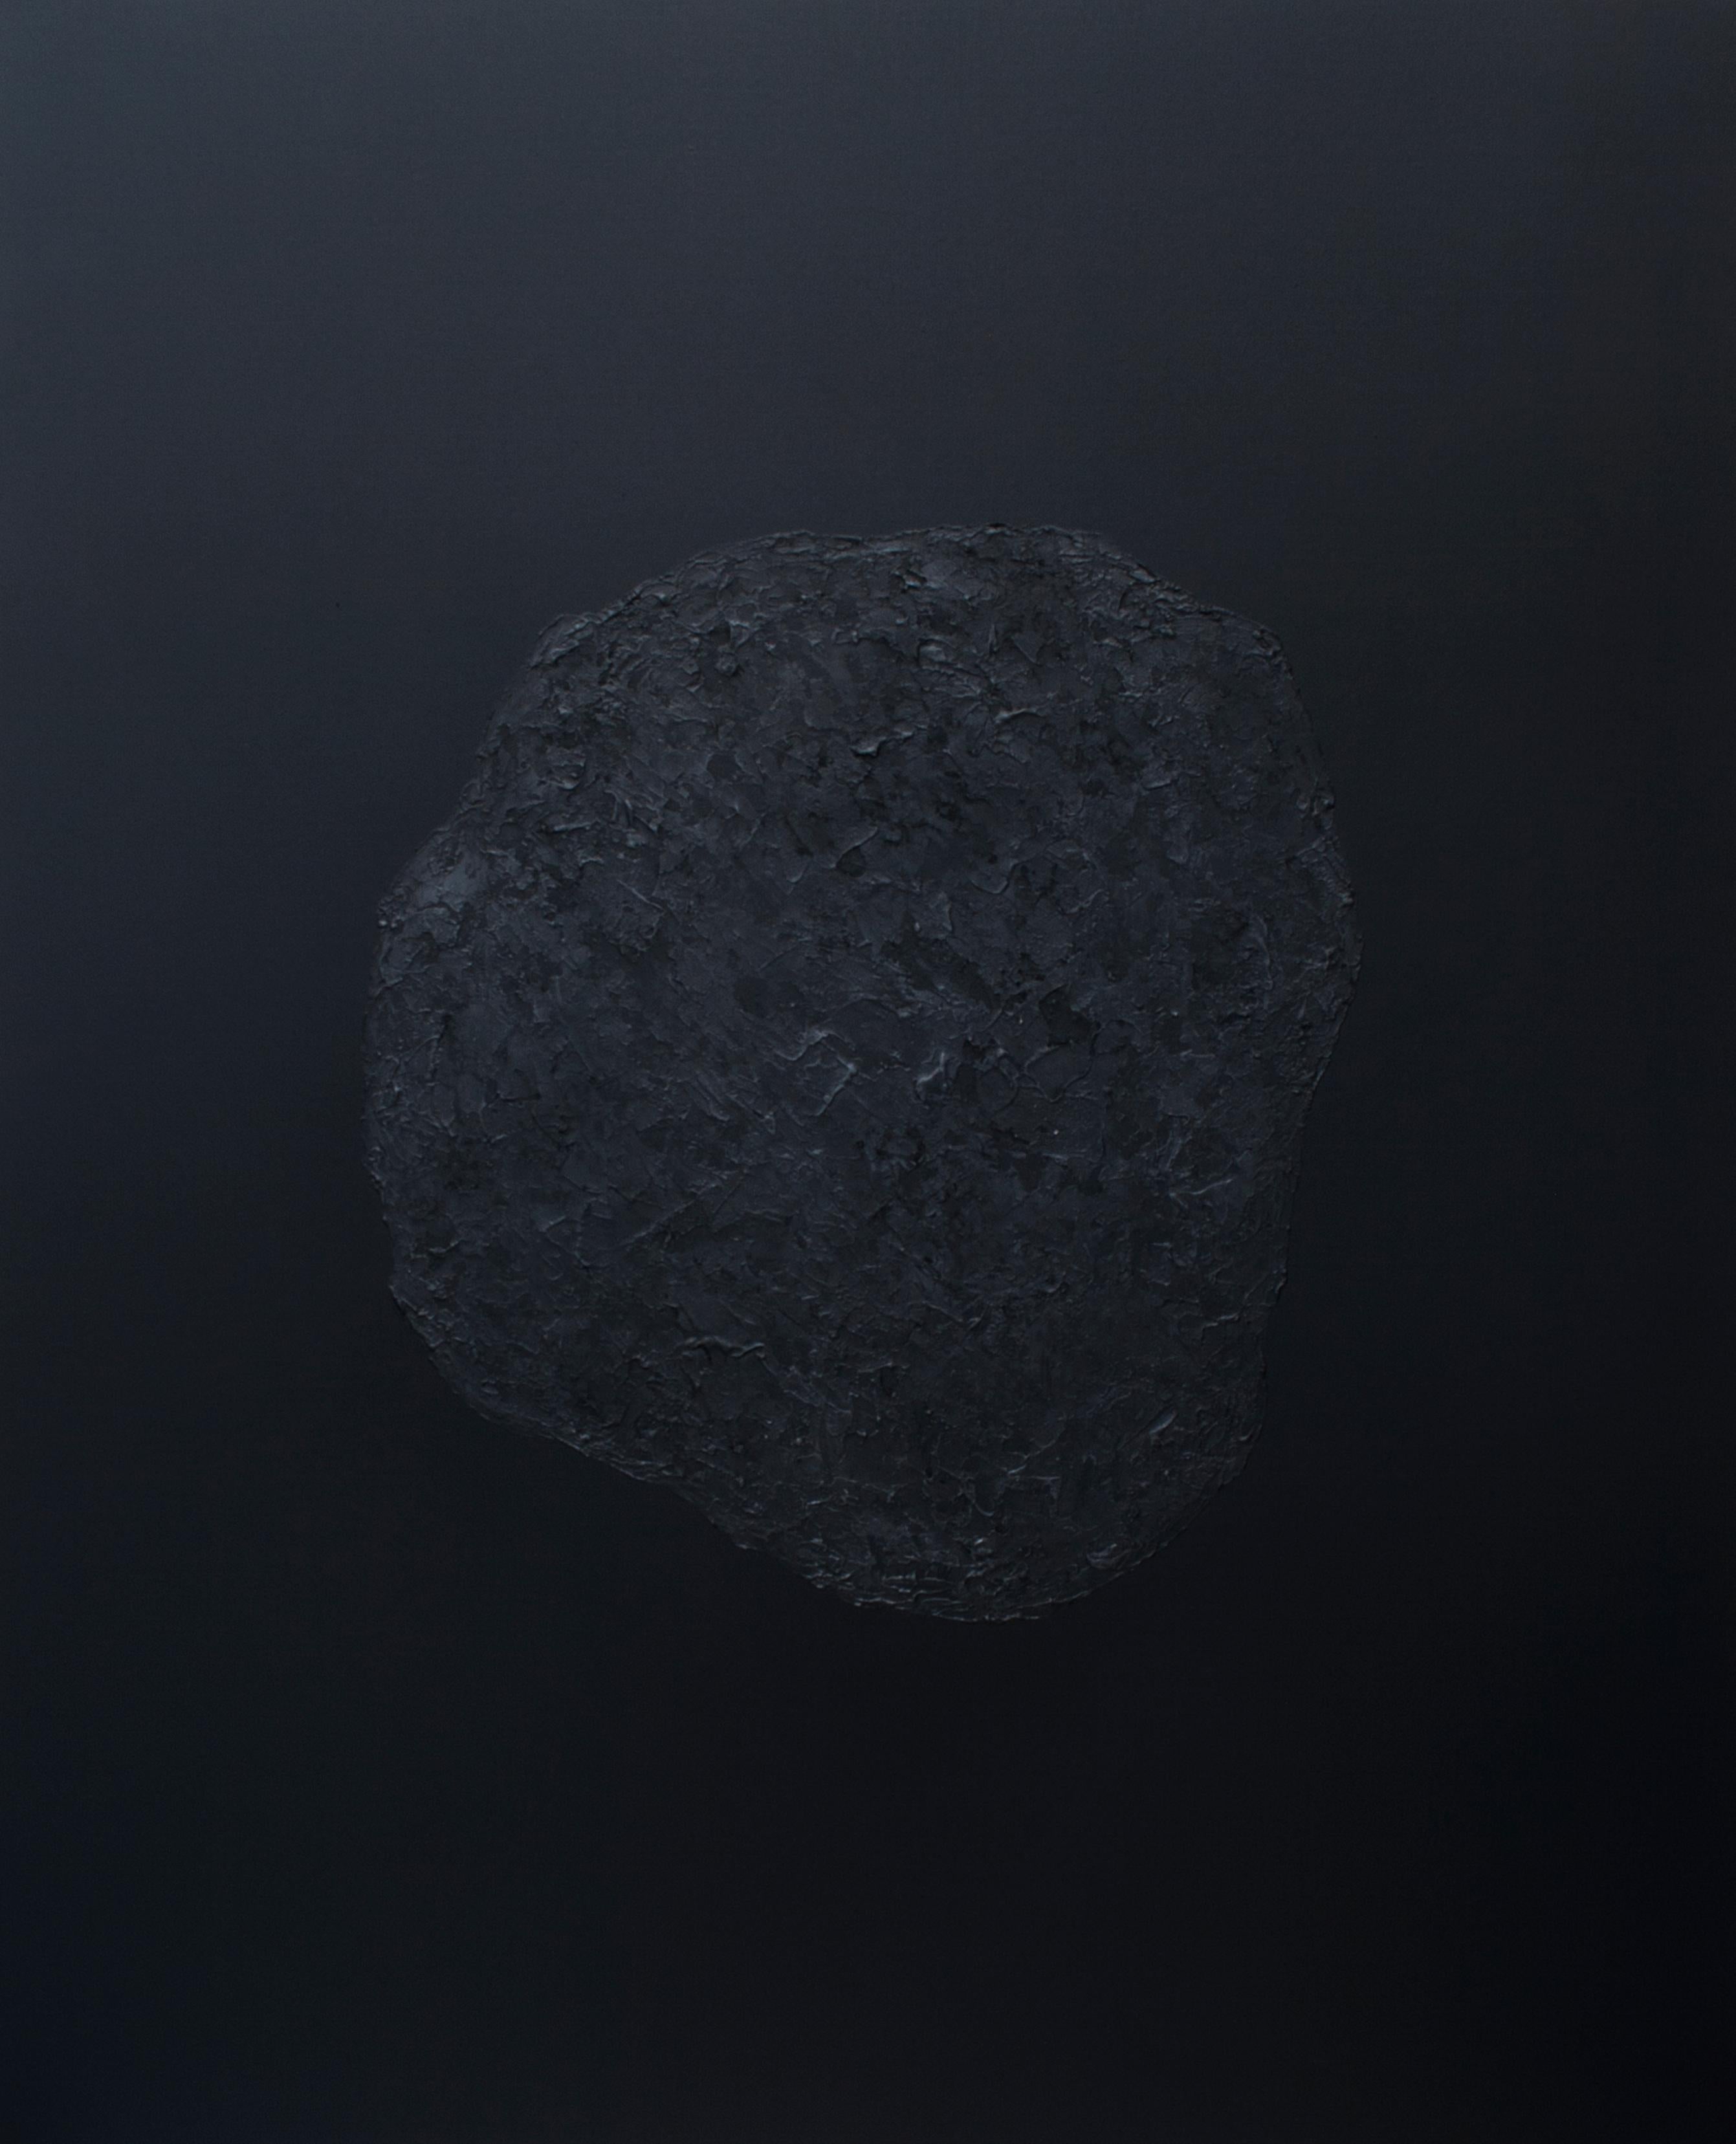 Stones XXXVII - 21st Century, Contemporary, Abstract Painting, Mixed Media